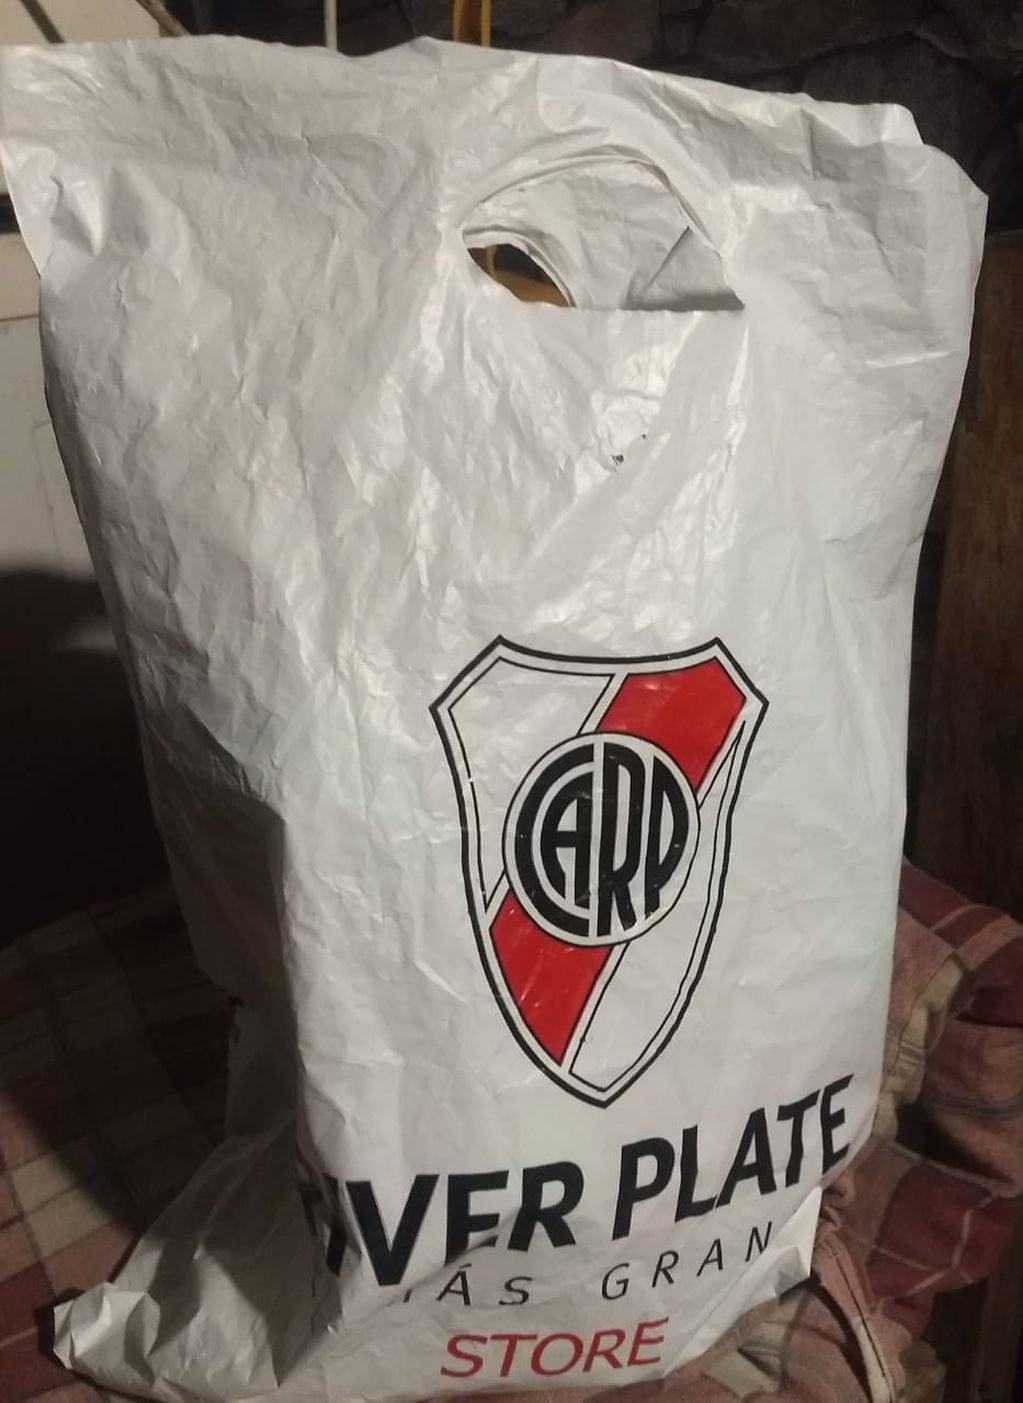 Esta es la bolsa con juguetes perdidos en Comodoro Rivadavia.